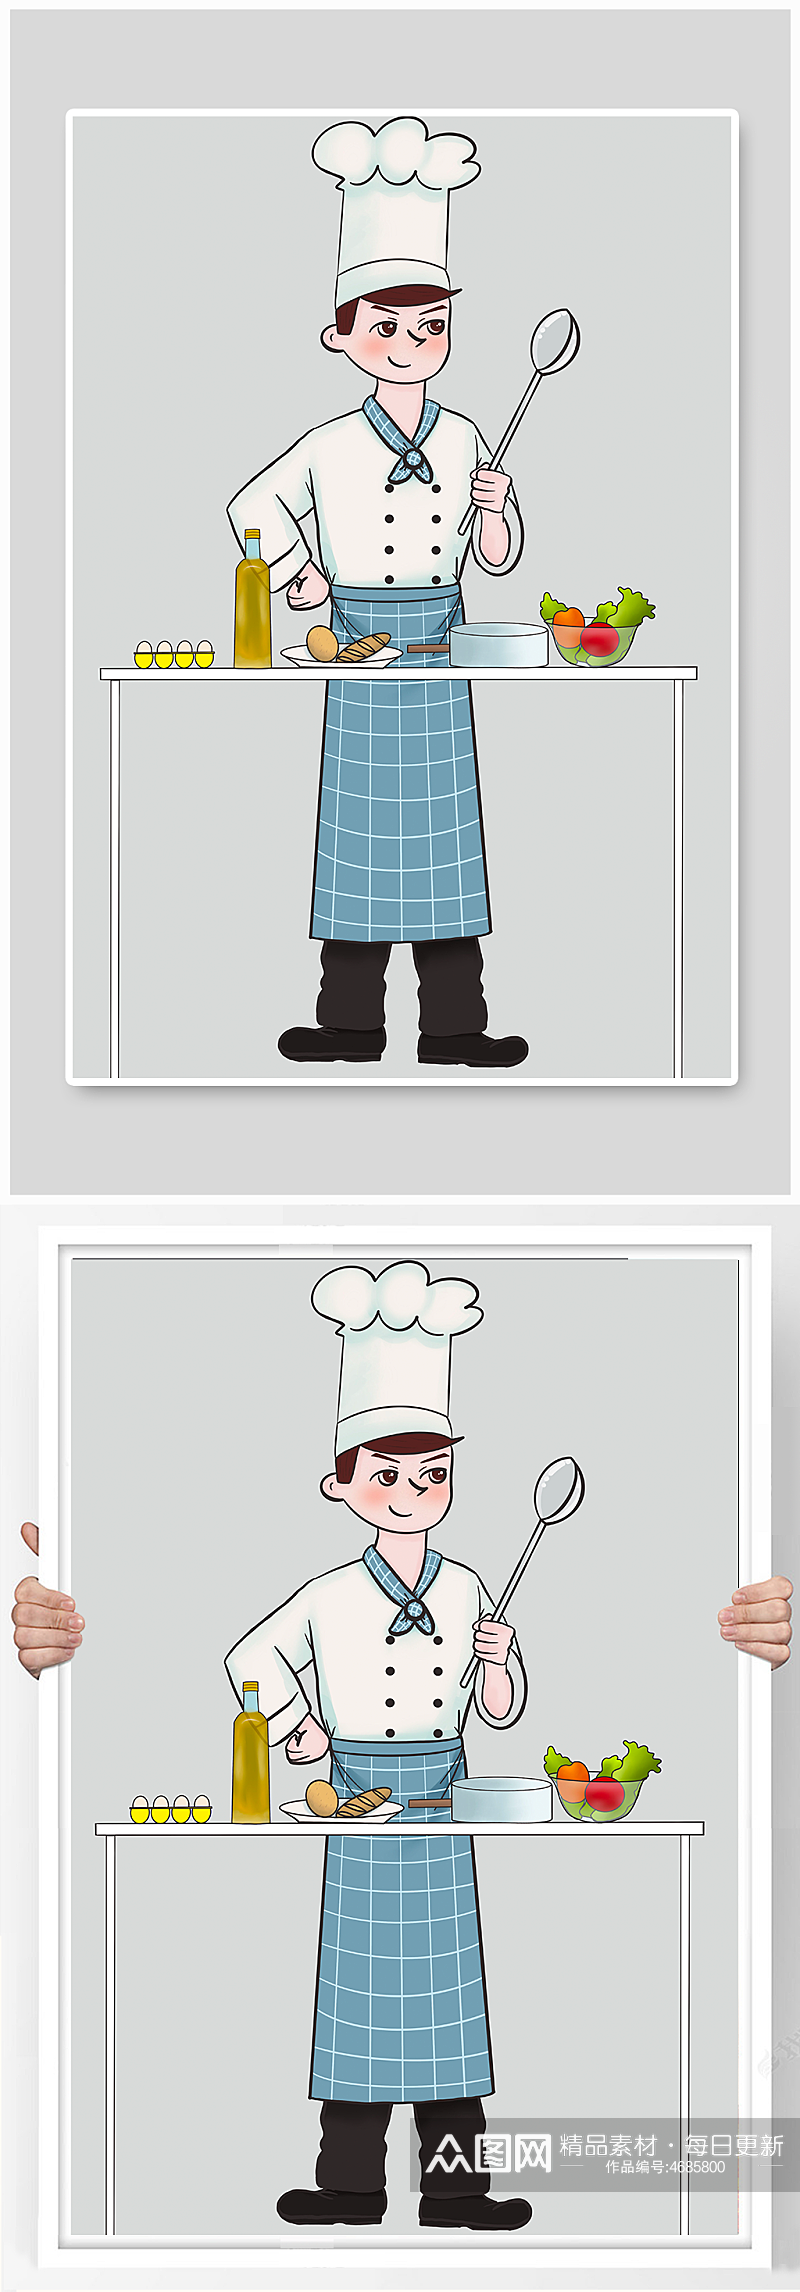 可爱的小厨师人物原创插画素材